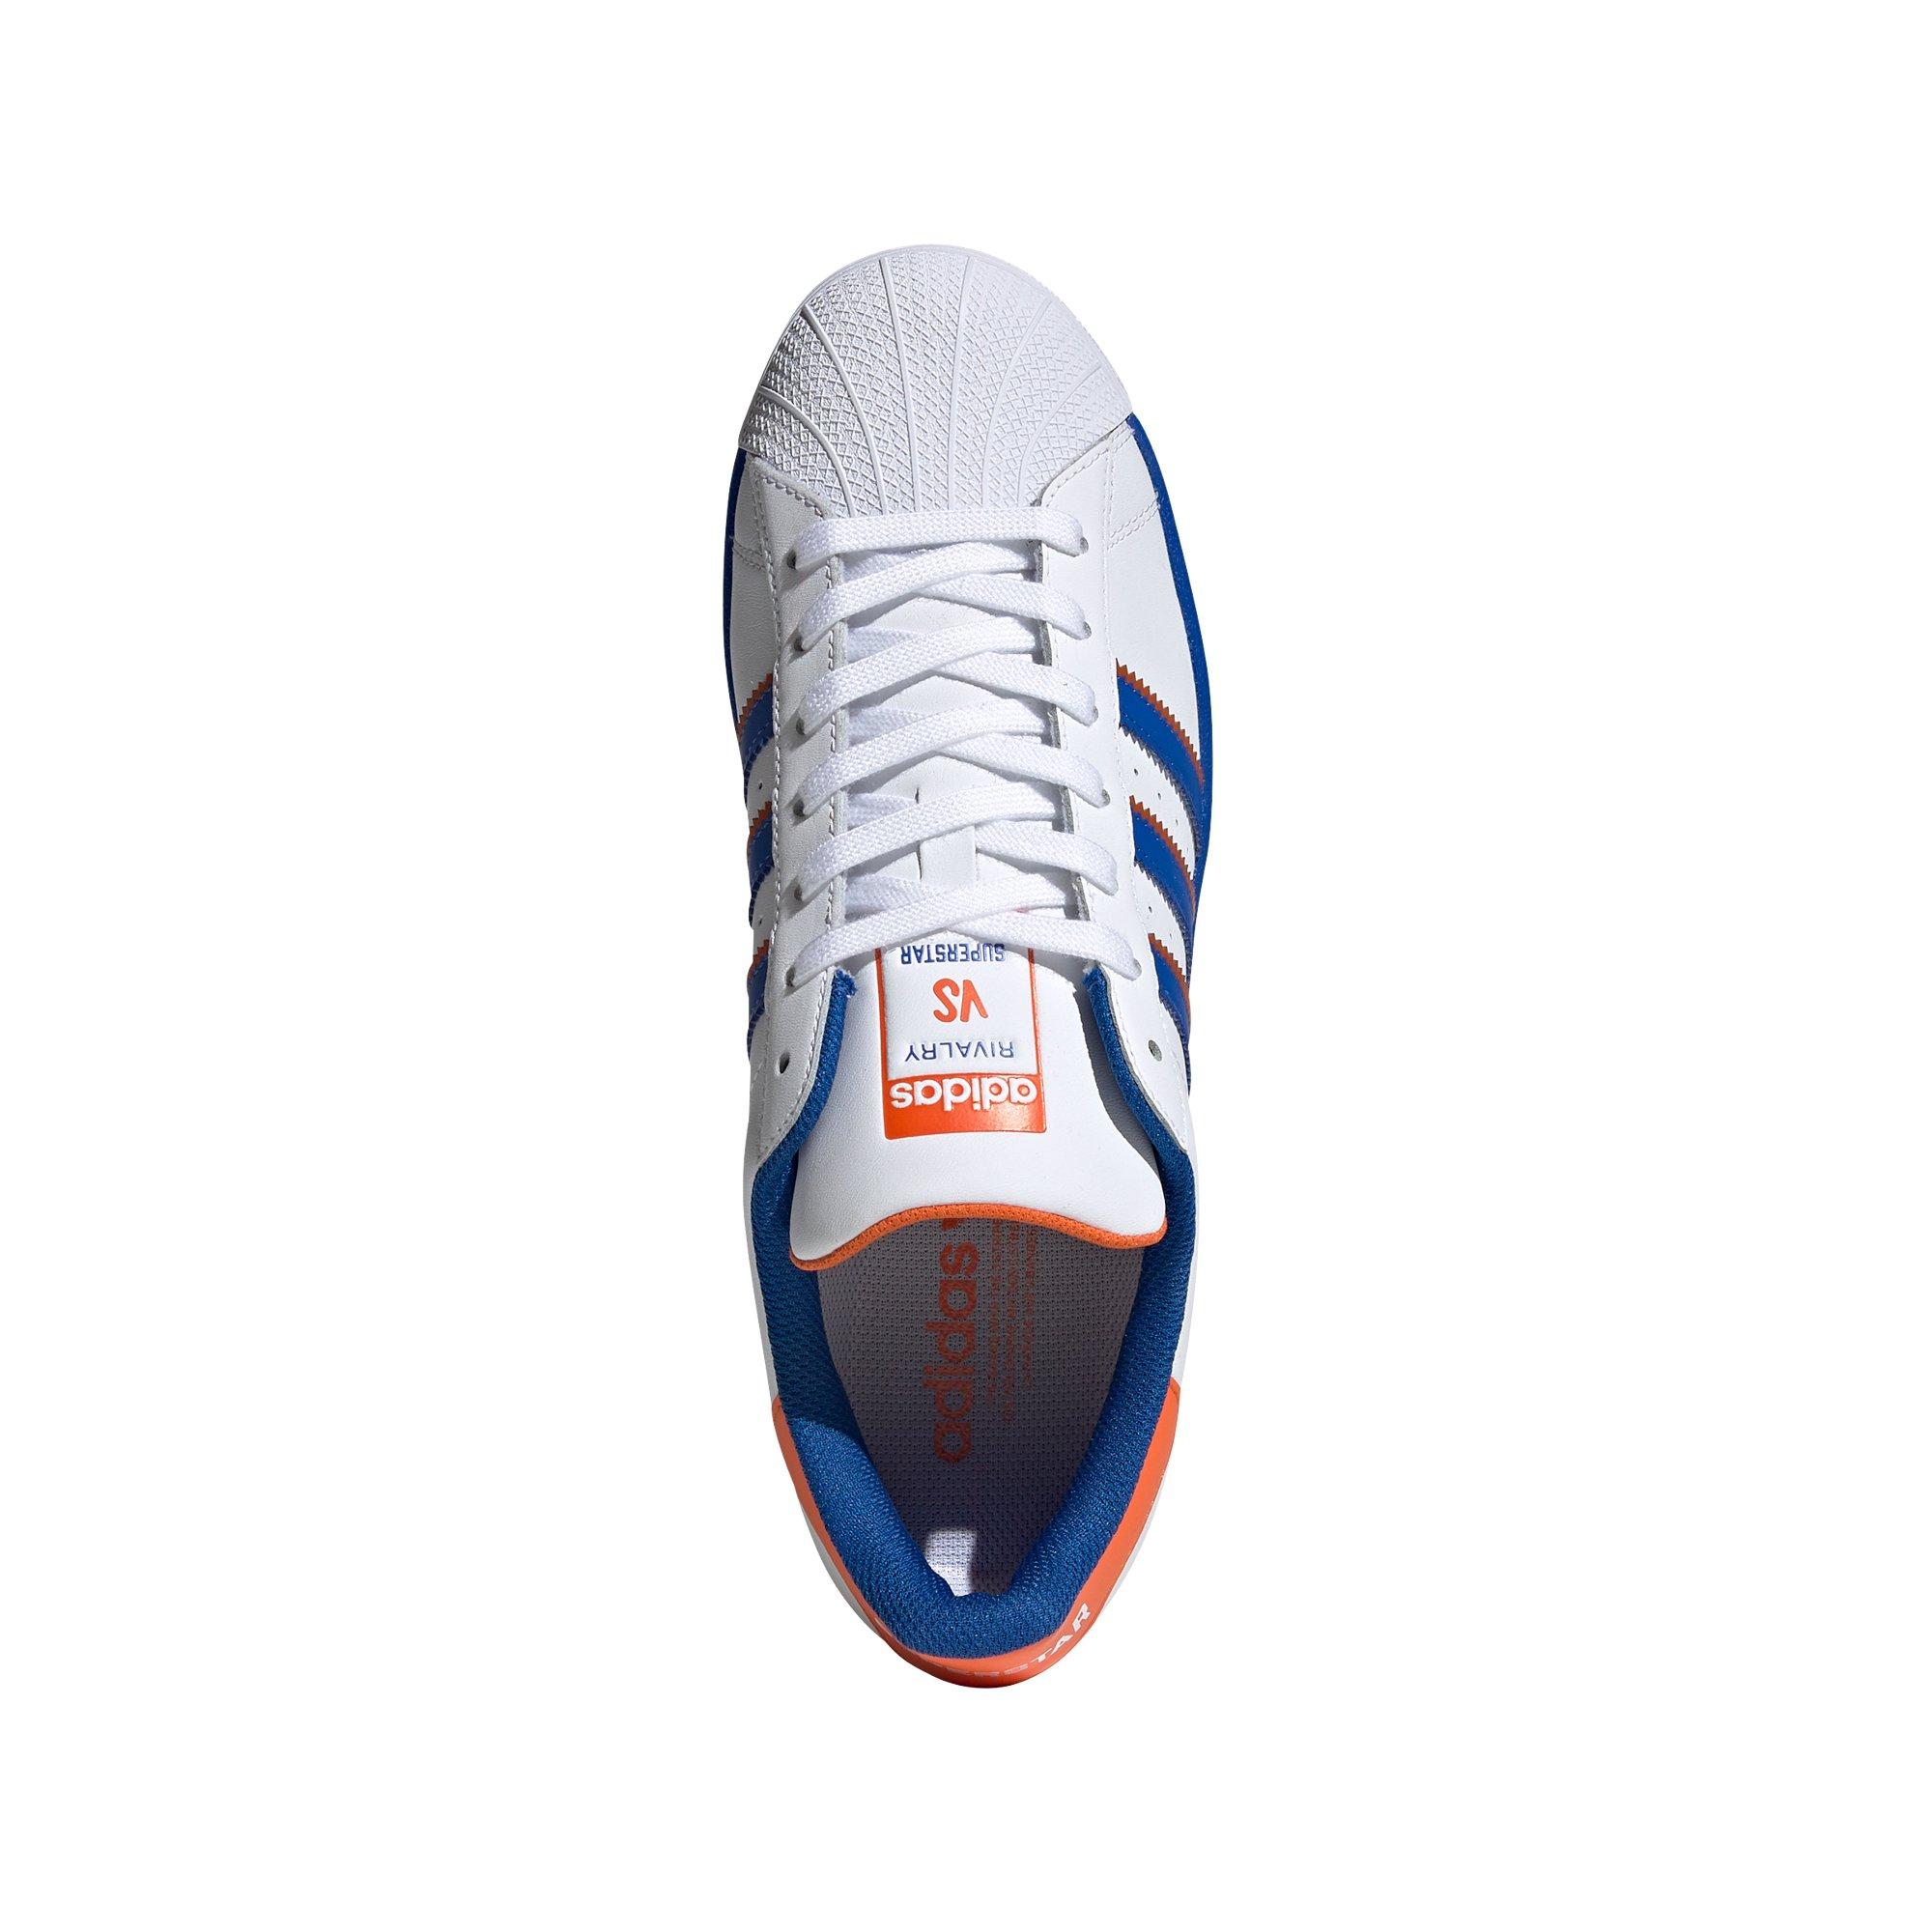 Puro marco engañar adidas Superstar "Ftwr White/Blue/Orange" Men's Shoe